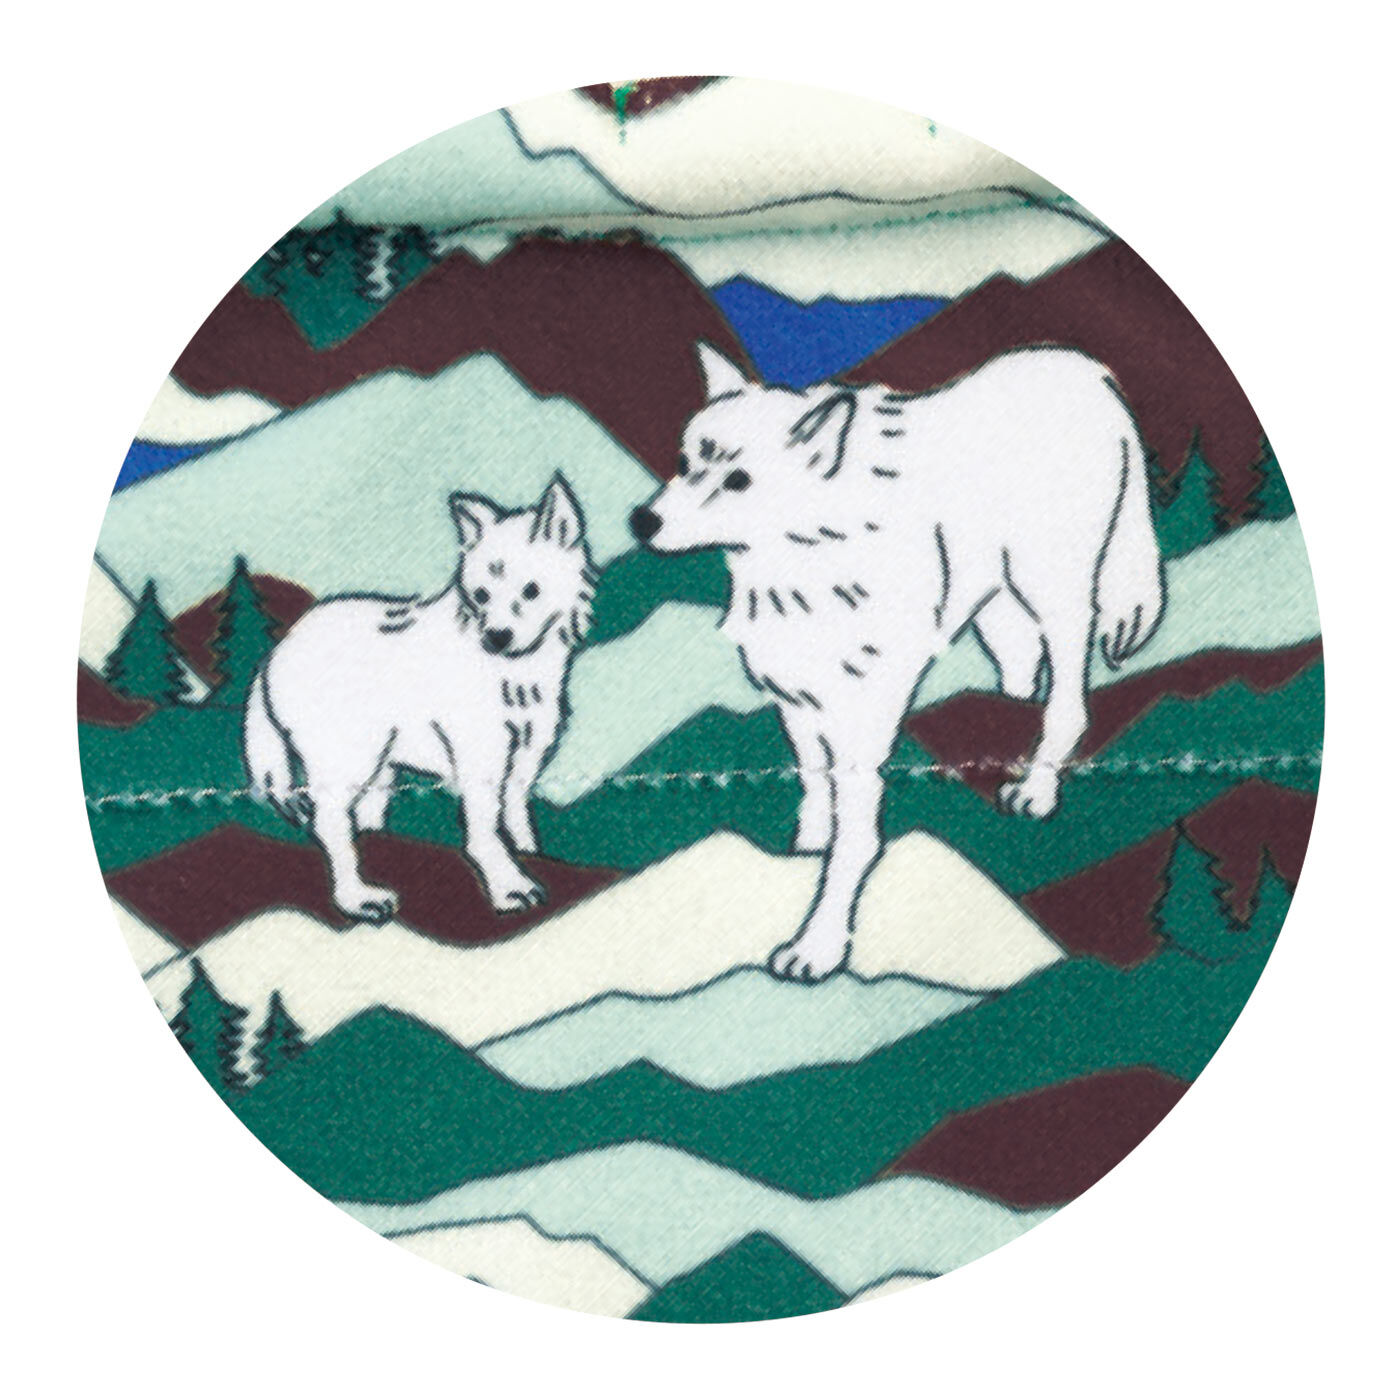 L'AMIPLUS|旭山動物園・ボルネオの森応援商品　ラミプリュス　特殊繊維で結ばずピタッ　持ち手が付いてるひっつクロスの会|シンリンオオカミ×森林